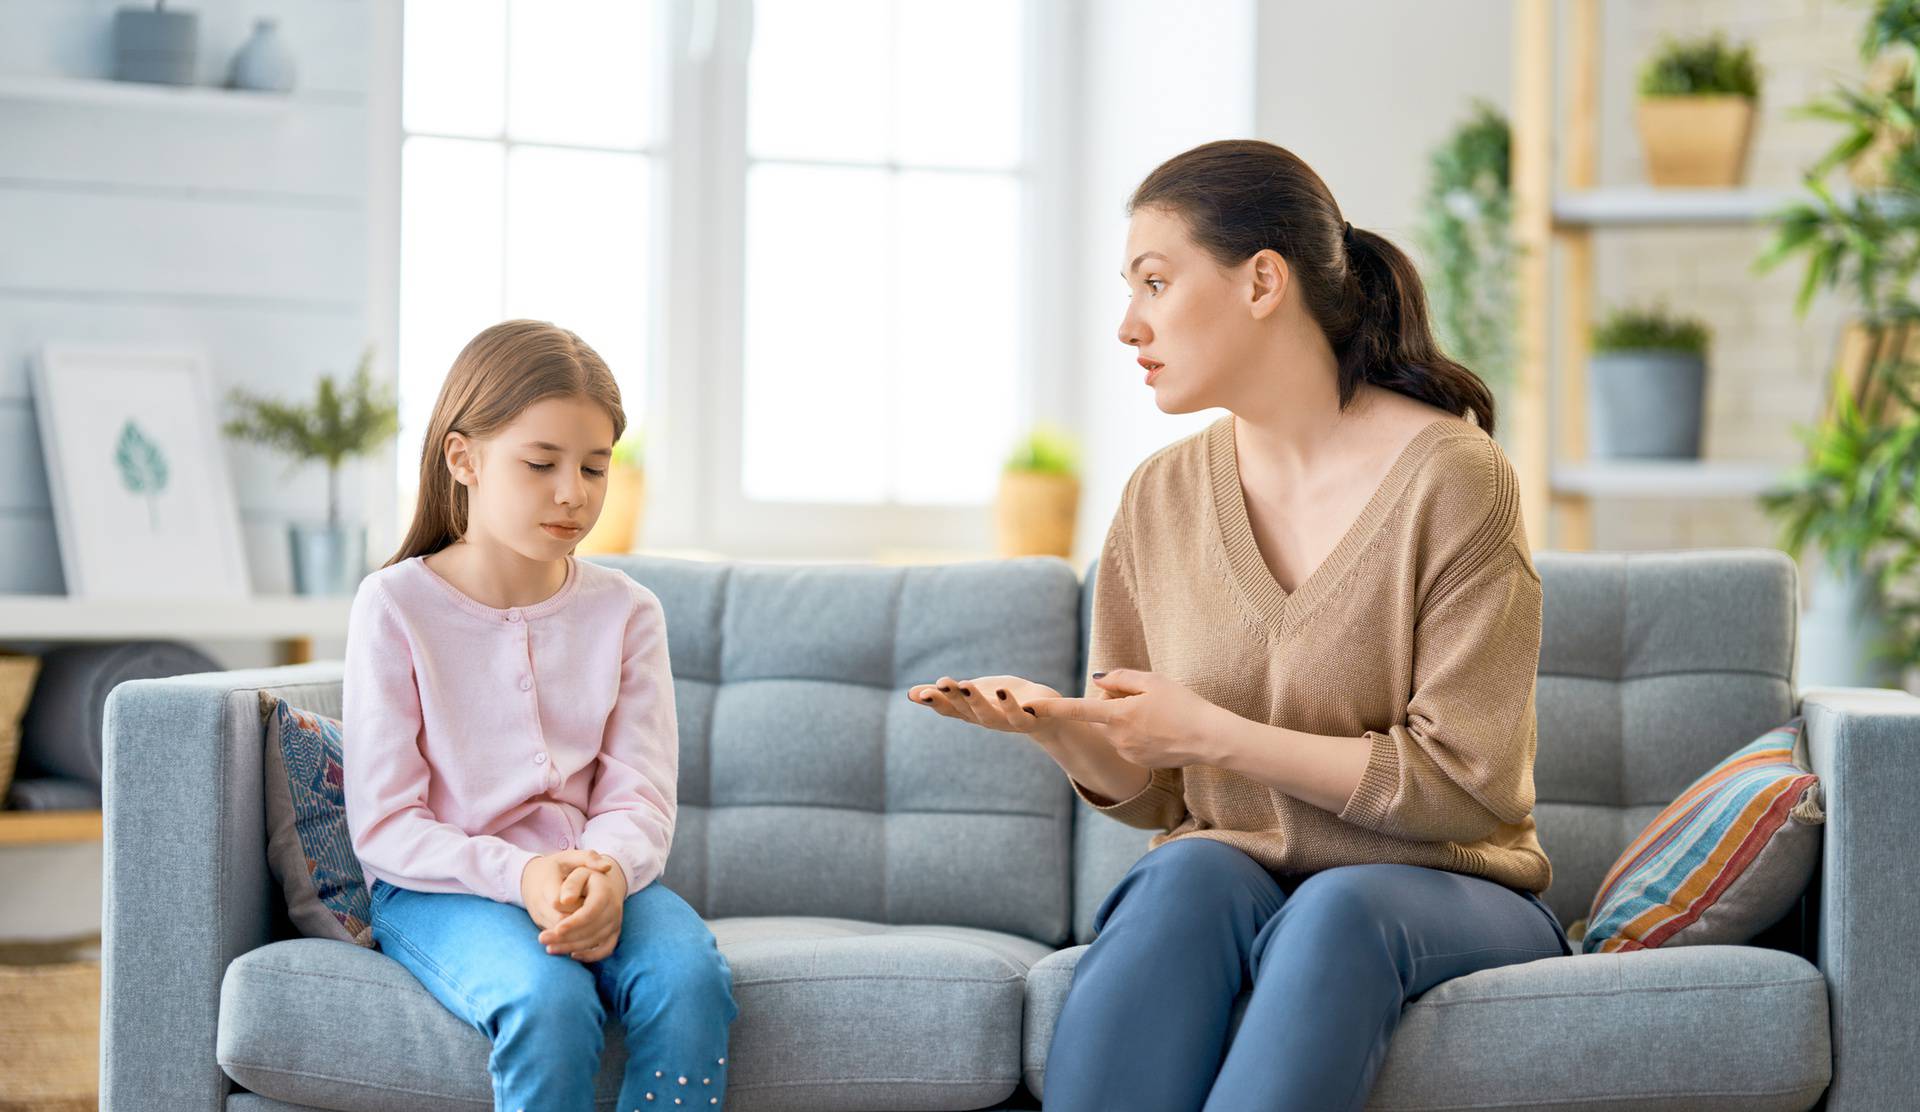 Pet načina da razgovarate s djecom da vas ona uistinu čuju